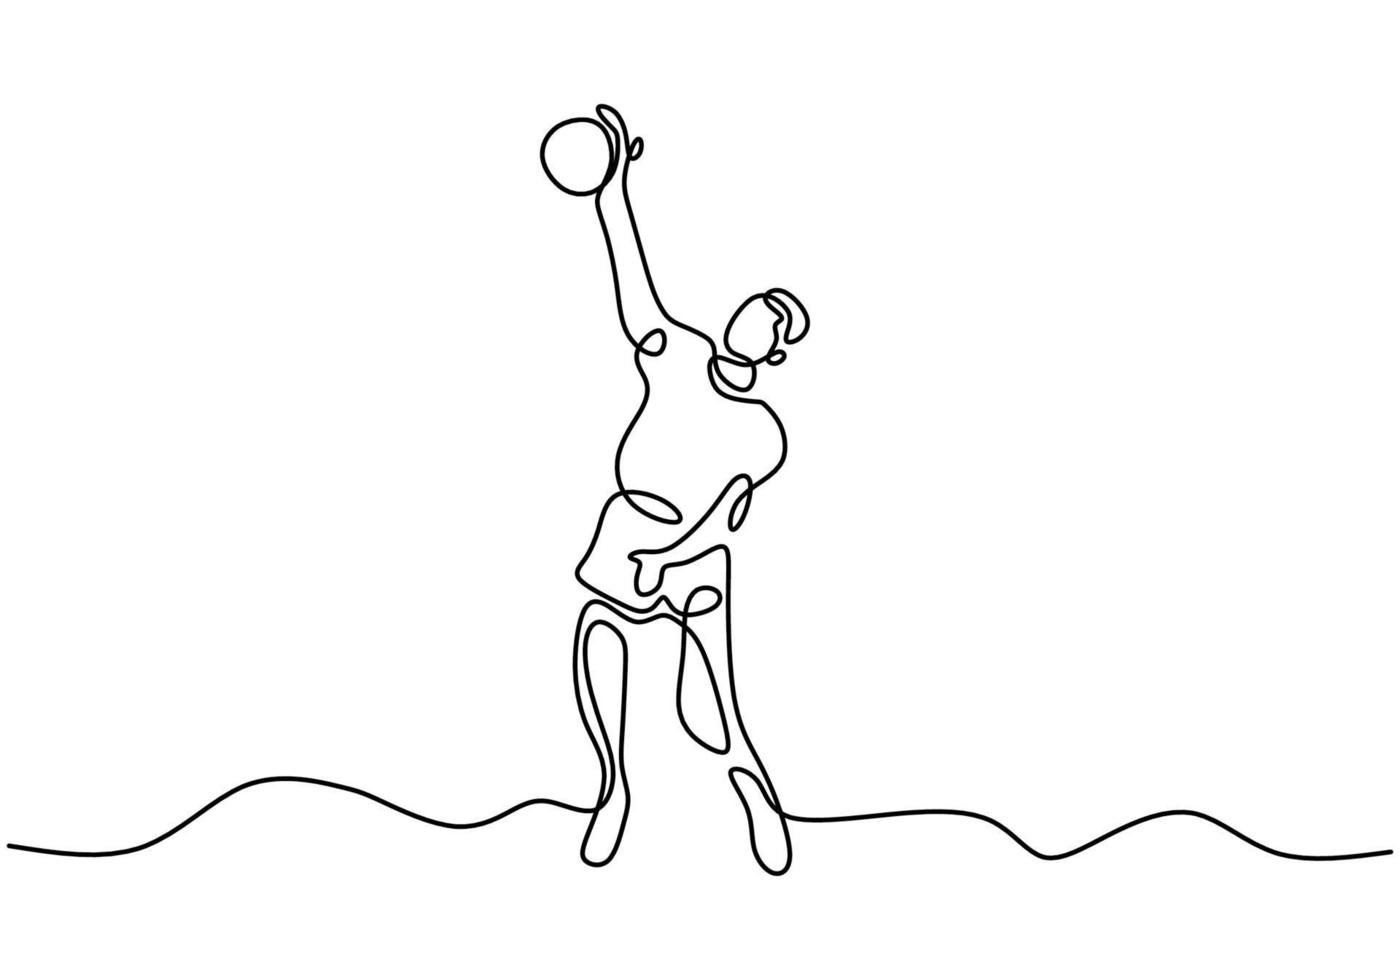 desenho de linha contínua de jovem jogador de voleibol masculino enérgico em ação de salto de pico na quadra. homem profissional salta para lançar a bola. ilustração vetorial design minimalista vetor